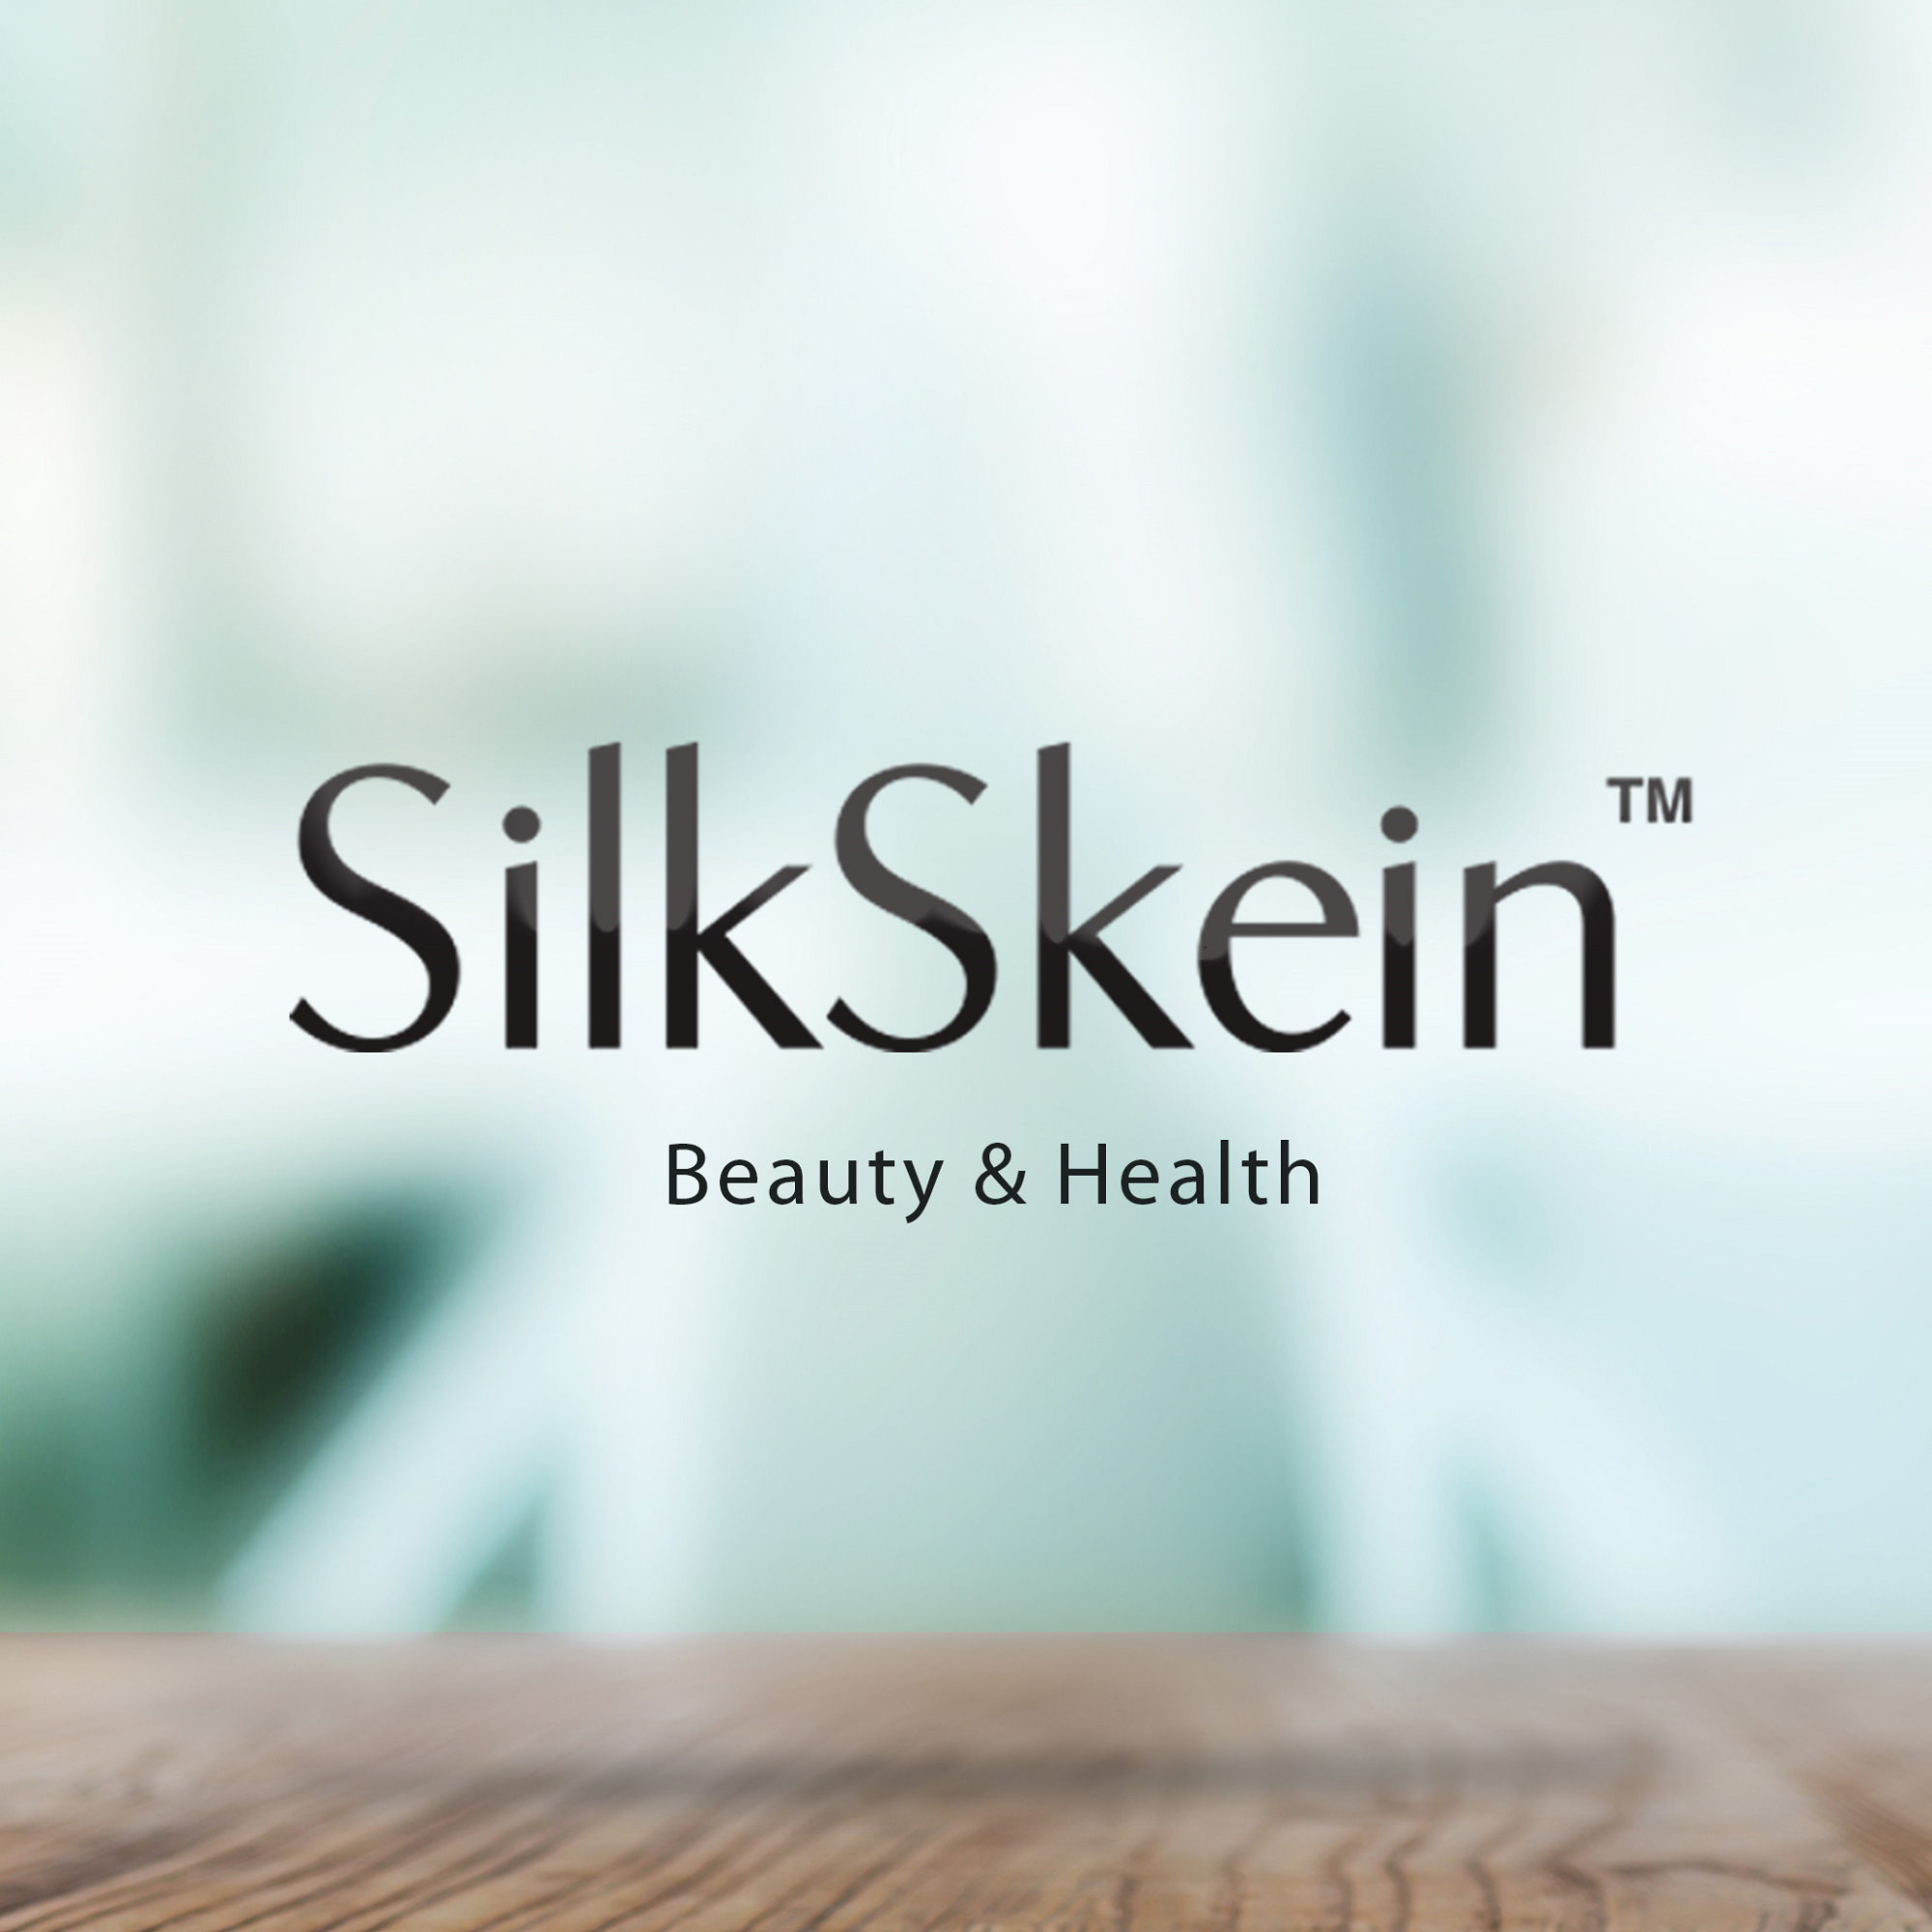 www.silkskein.com